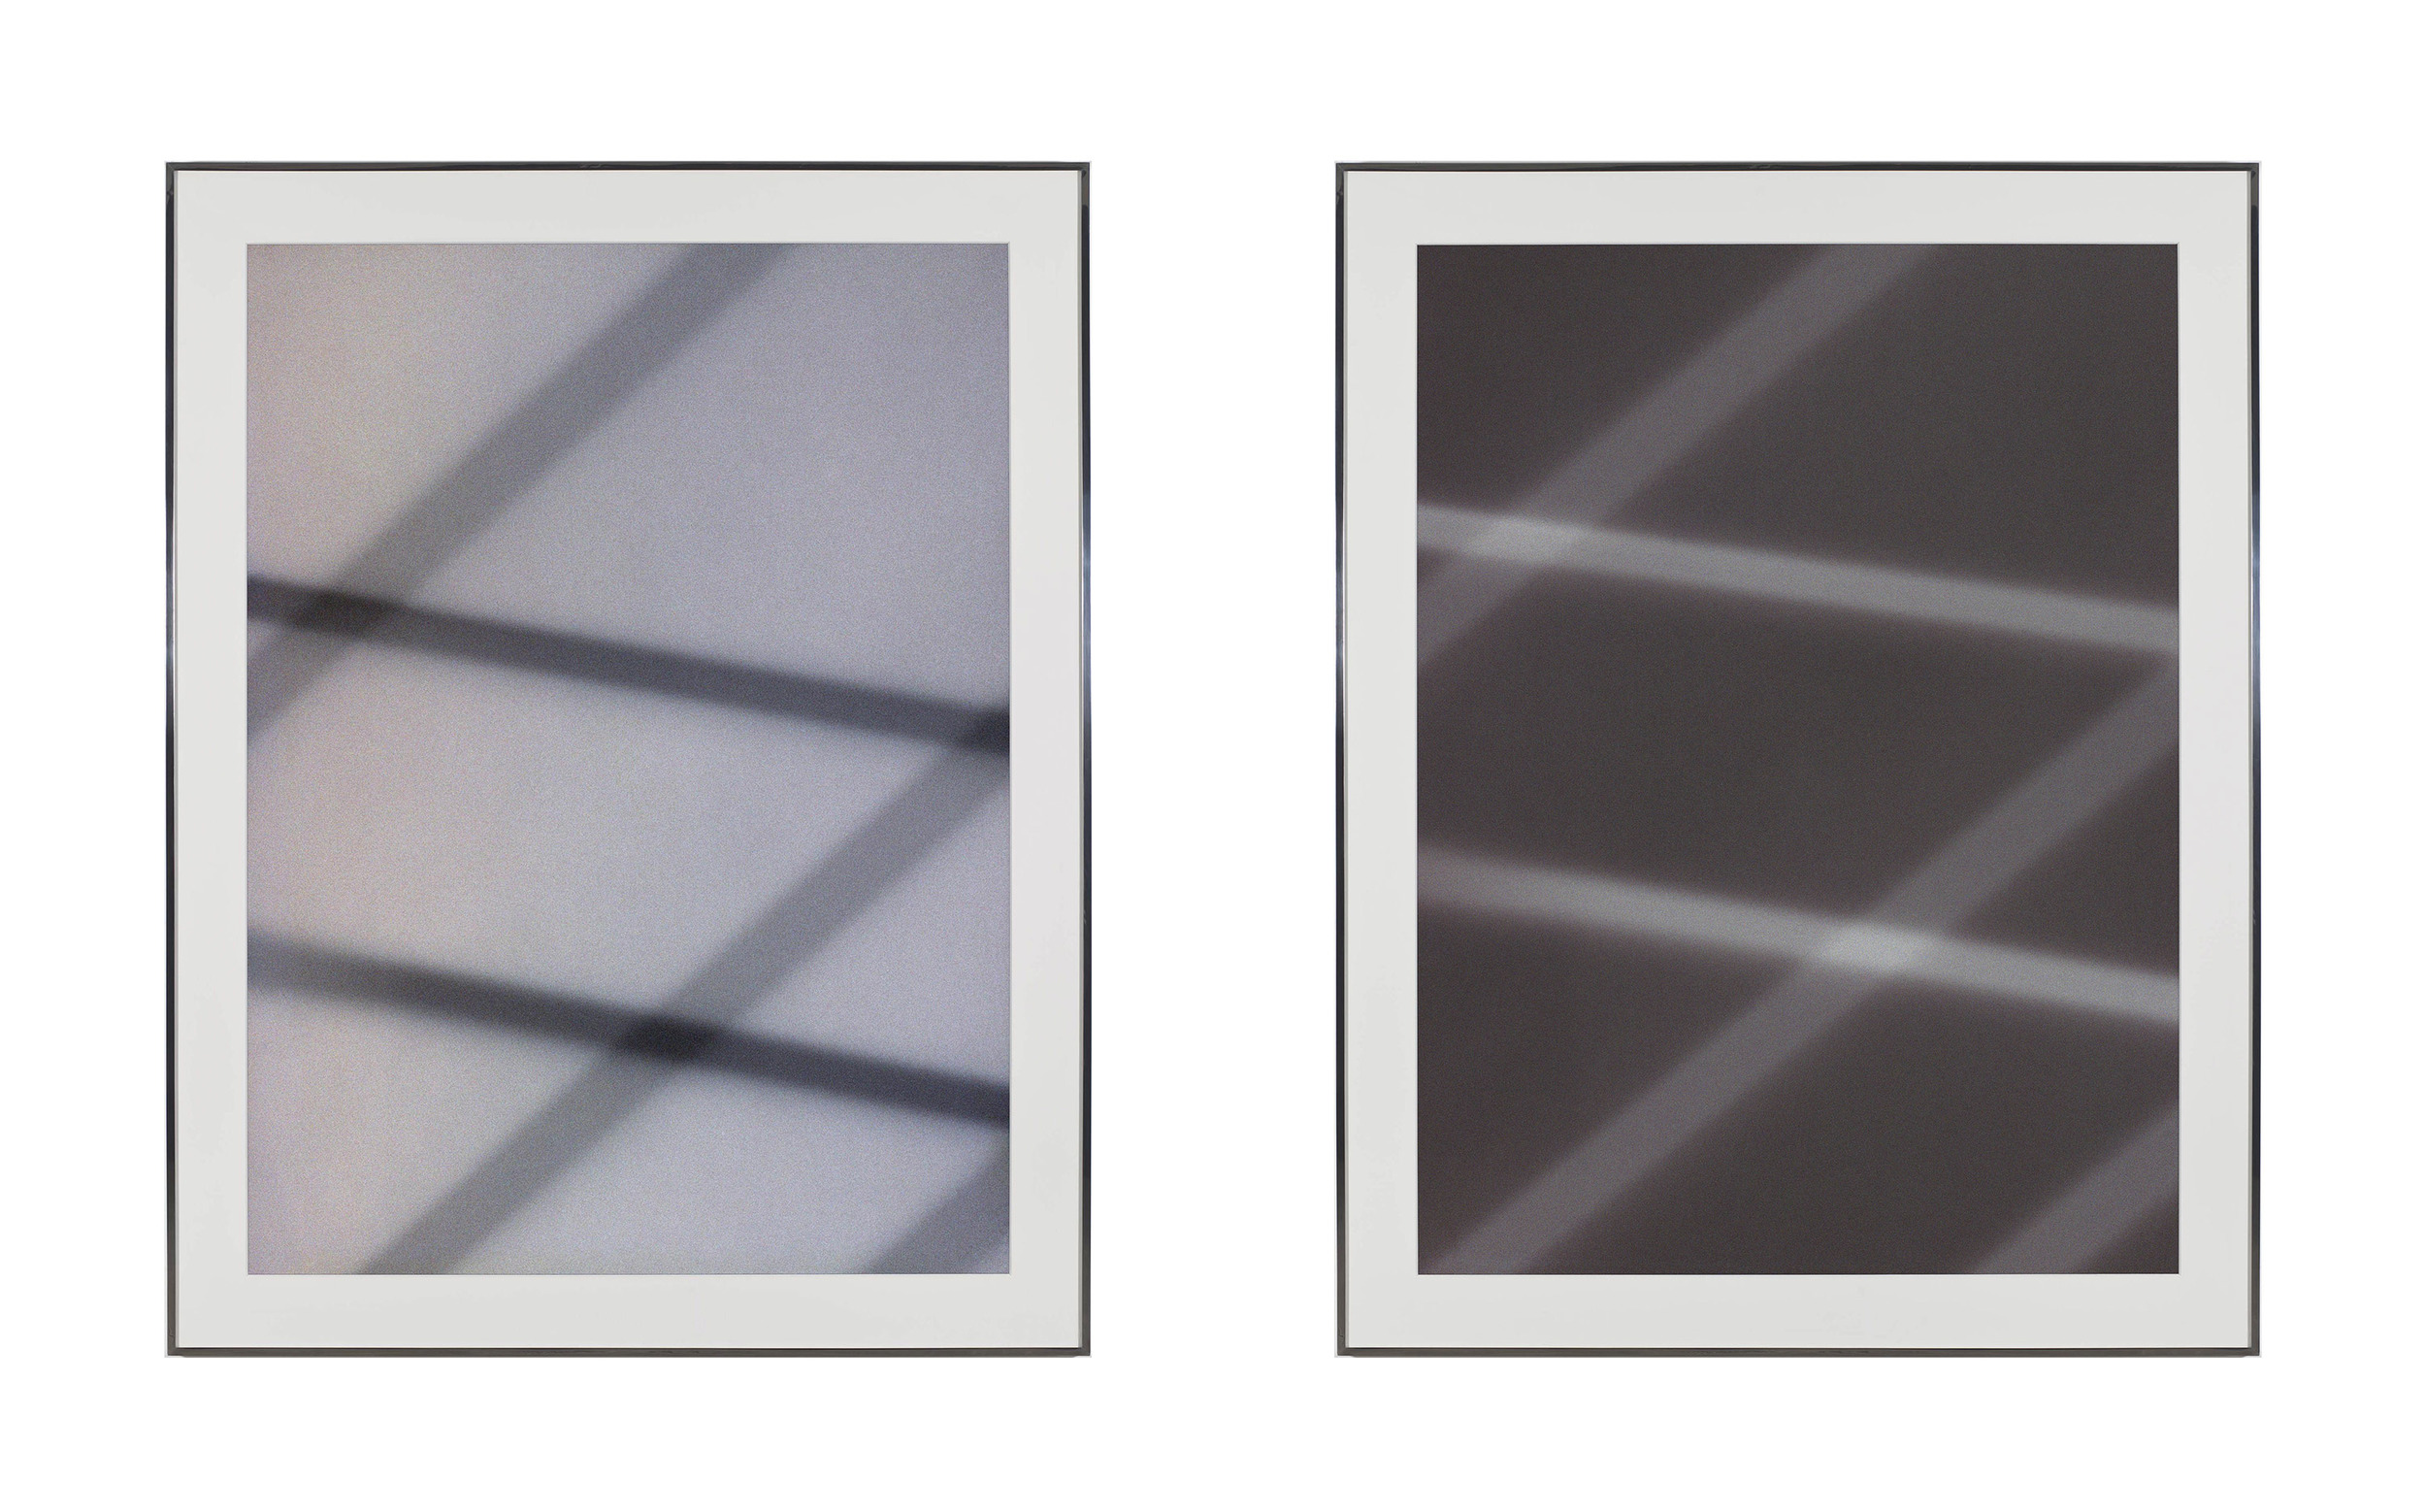   Transparency (Positive) [Fujichrome RDPIII Provia 100F Em. No. 05481: April 25–29, 2011 LAX/SFO/PEK PEK/SFO/LAX];&nbsp;Transparency (Negative) [Kodak Portra 400NC Em. No. 2051: April 25–29, 2011 LAX/SFO/PEK PEK/SFO/LAX]    2011   Epson Ultrachrome 